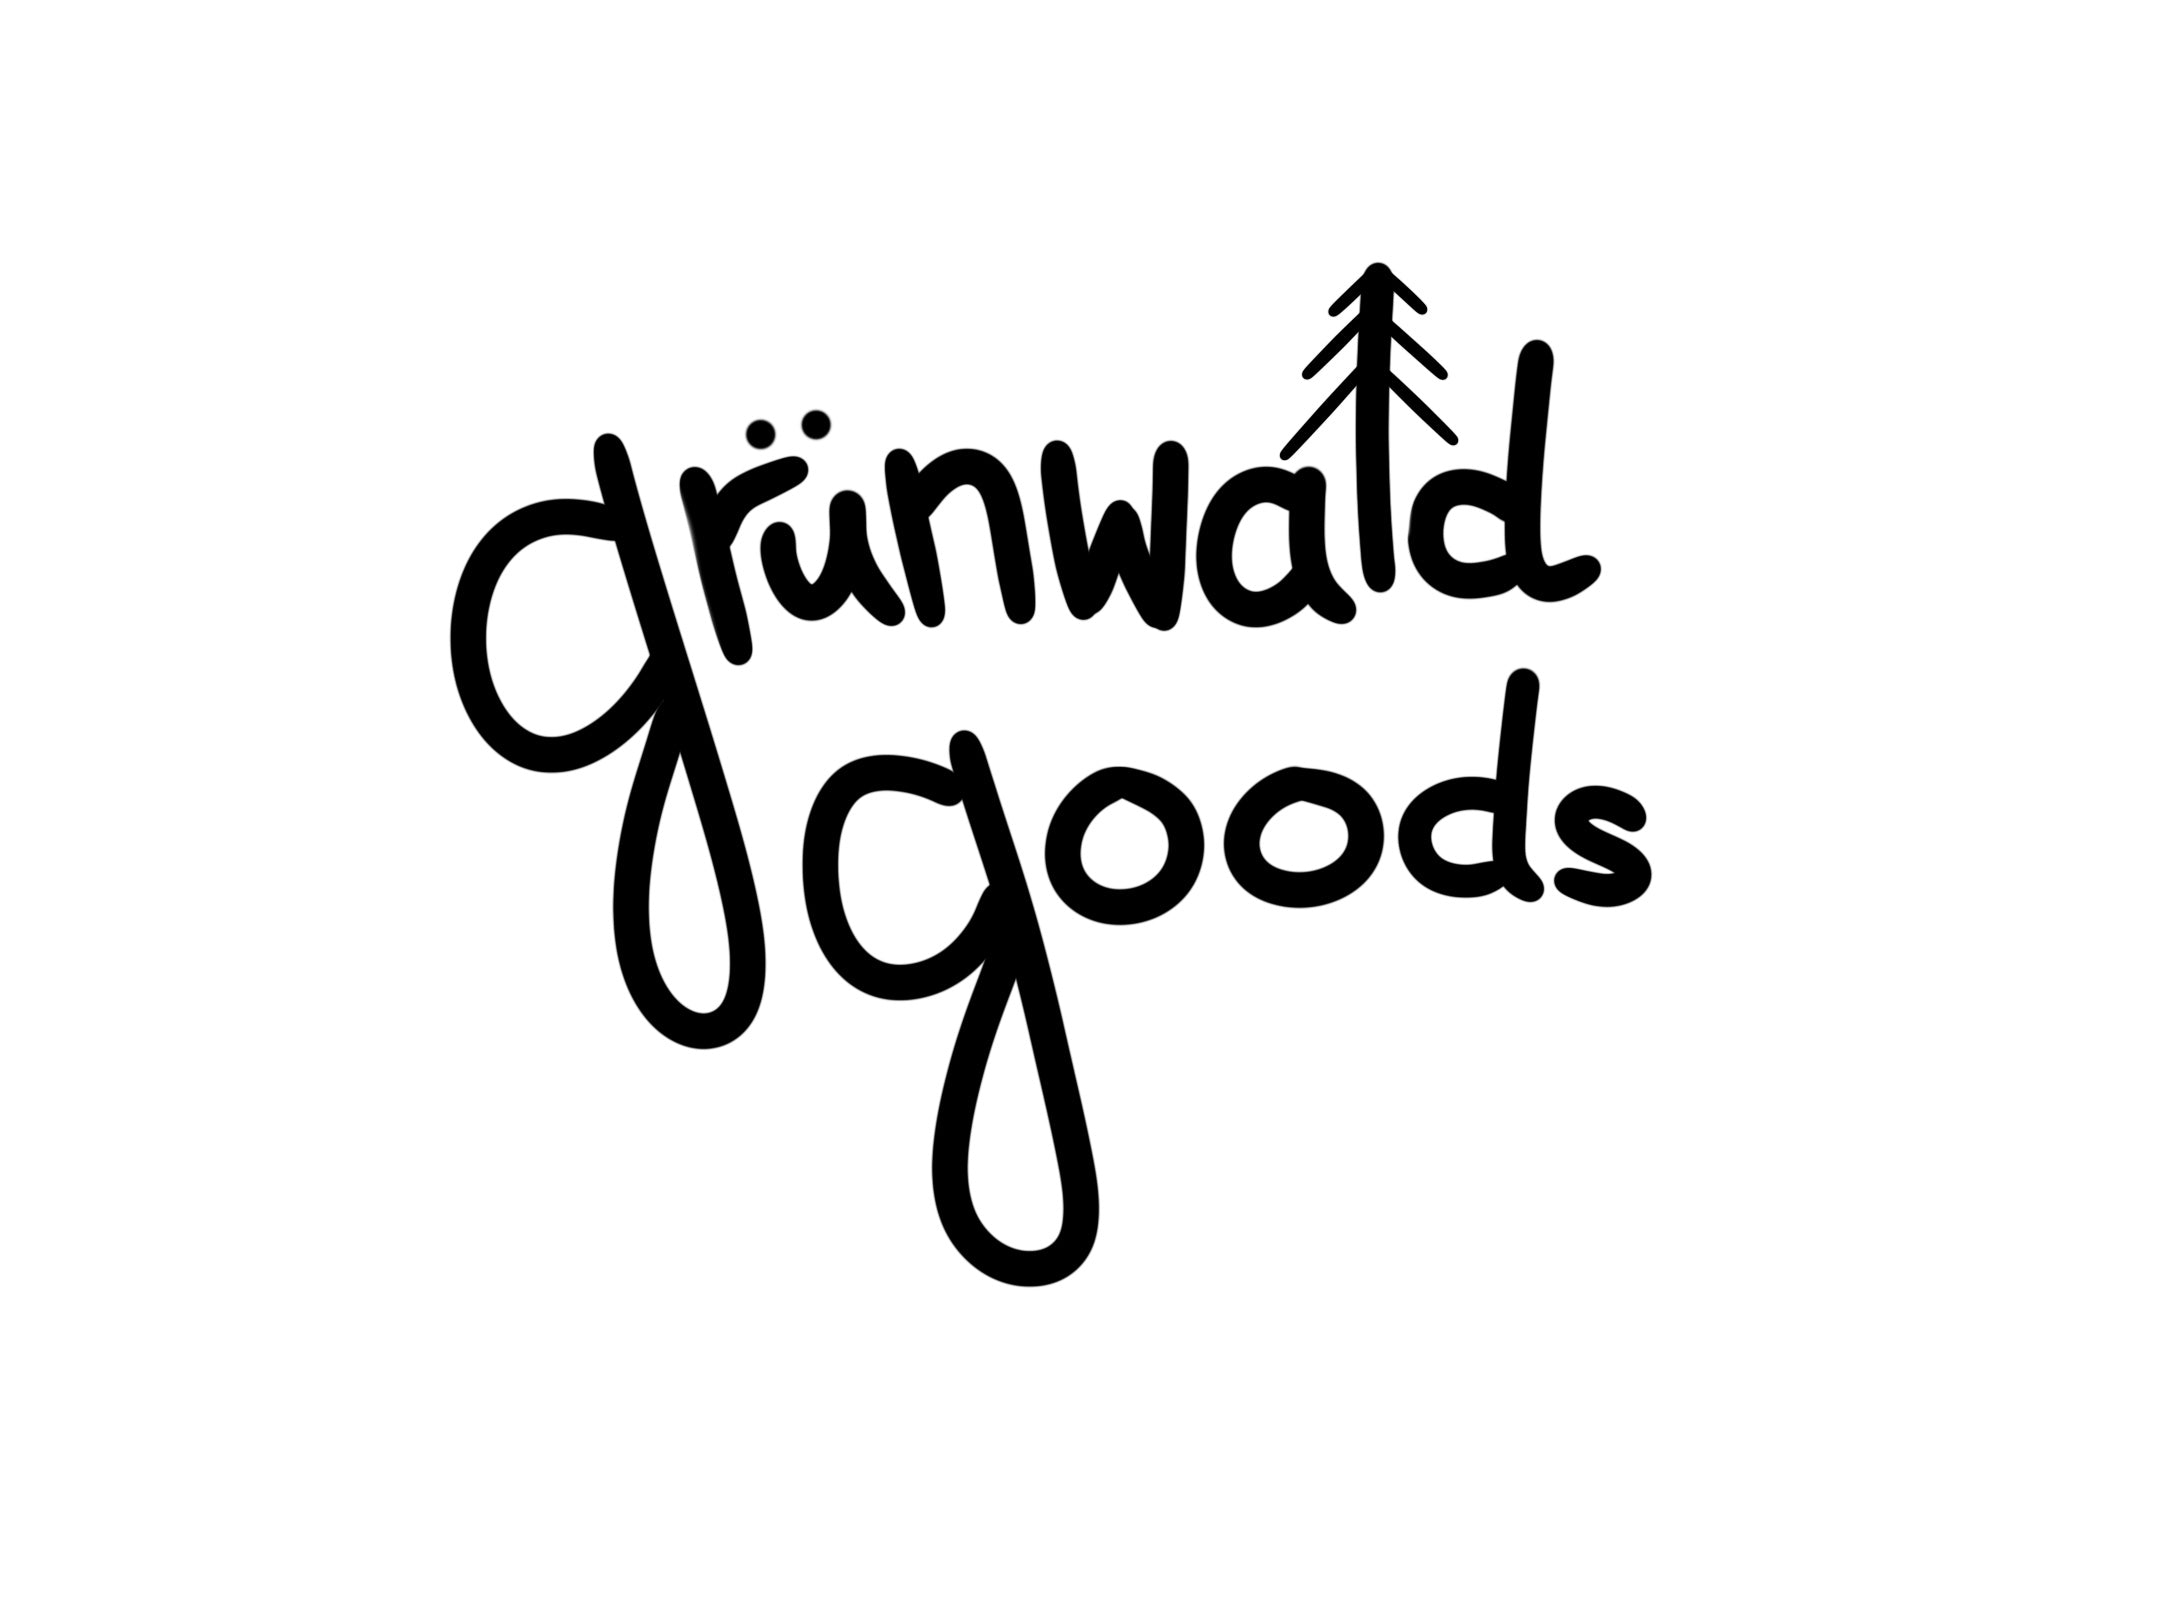 grünwald goods